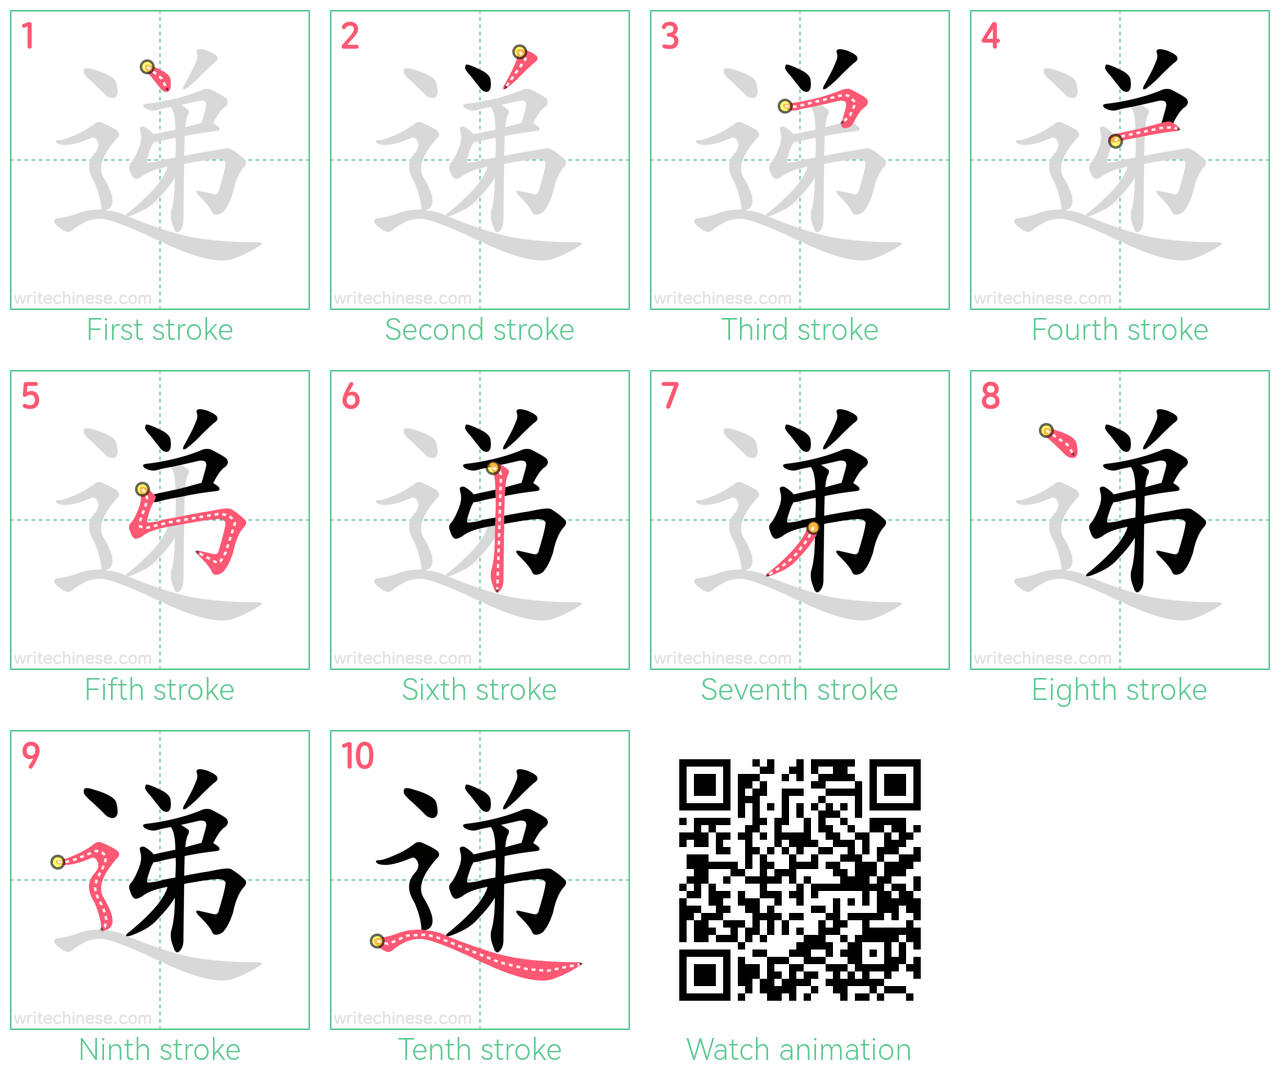 递 step-by-step stroke order diagrams